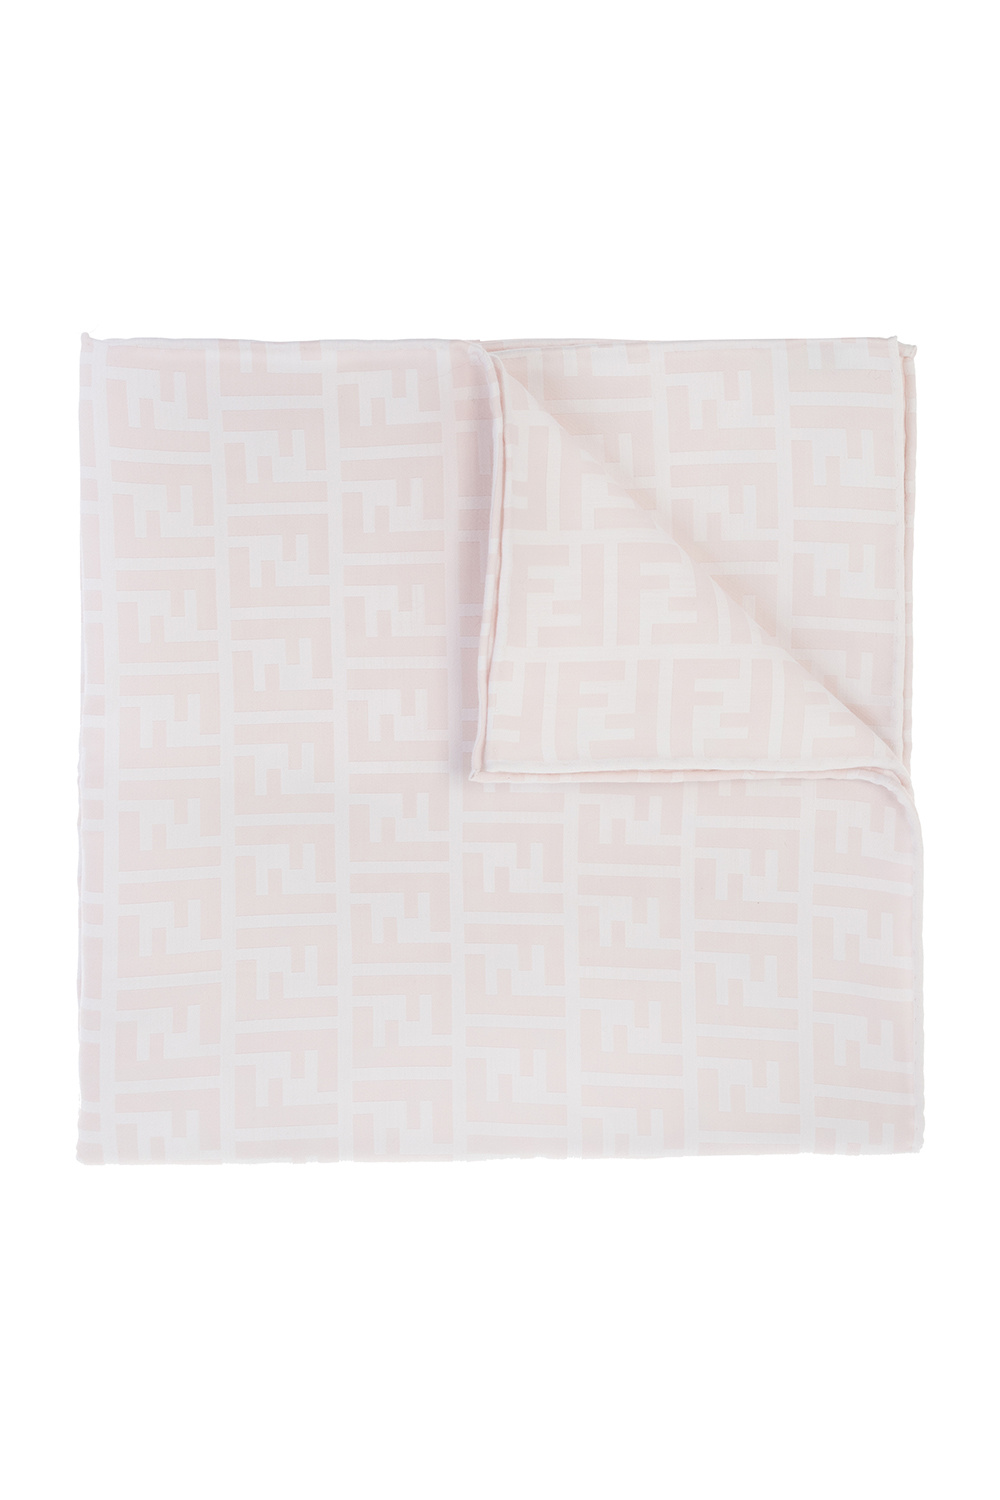 Pink Wash bag & blanket set Fendi Kids - Vitkac GB